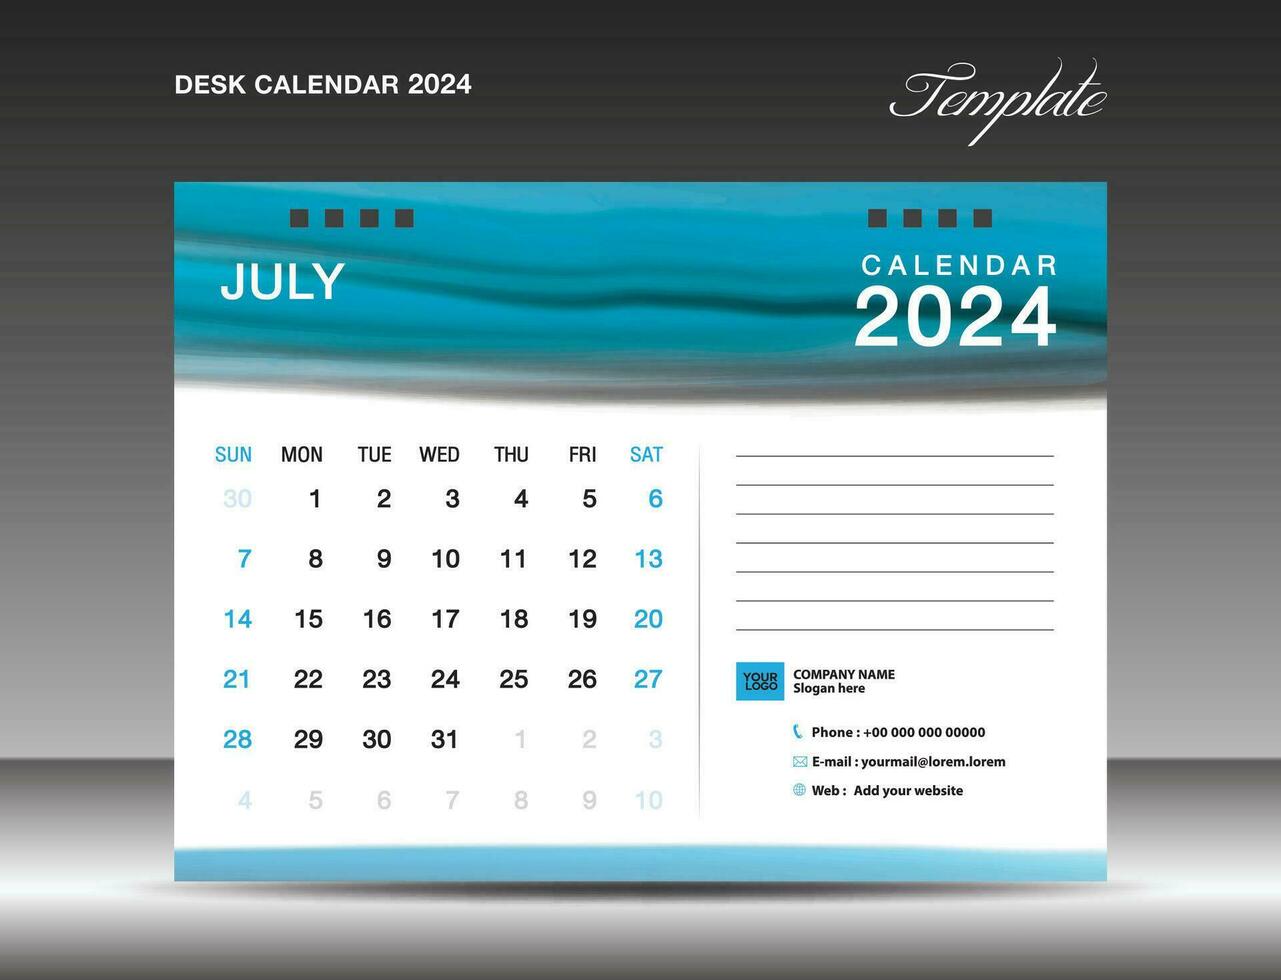 escritorio calandrar 2024 - julio 2024 plantilla, calendario 2024 diseño plantilla, planificador, simple, pared calendario diseño, semana empieza en domingo, impresión, publicidad, azul acuarela fondo, vector